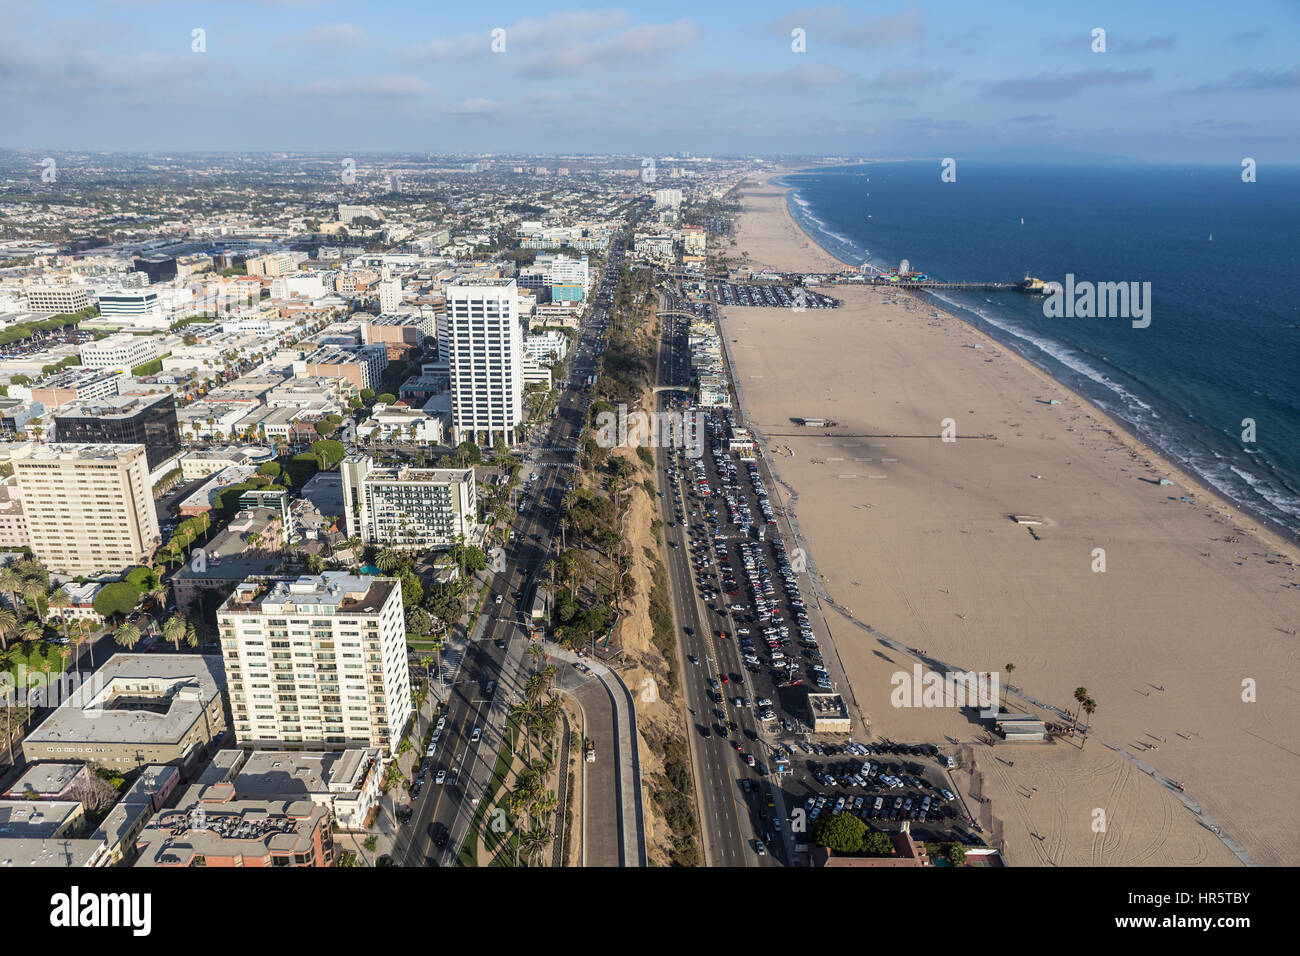 Santa Monica, Californie, USA - 6 août 2016 : Vue aérienne de l'Autoroute de la côte Pacifique et la plage de Santa Monica, près de Los Angeles. Banque D'Images